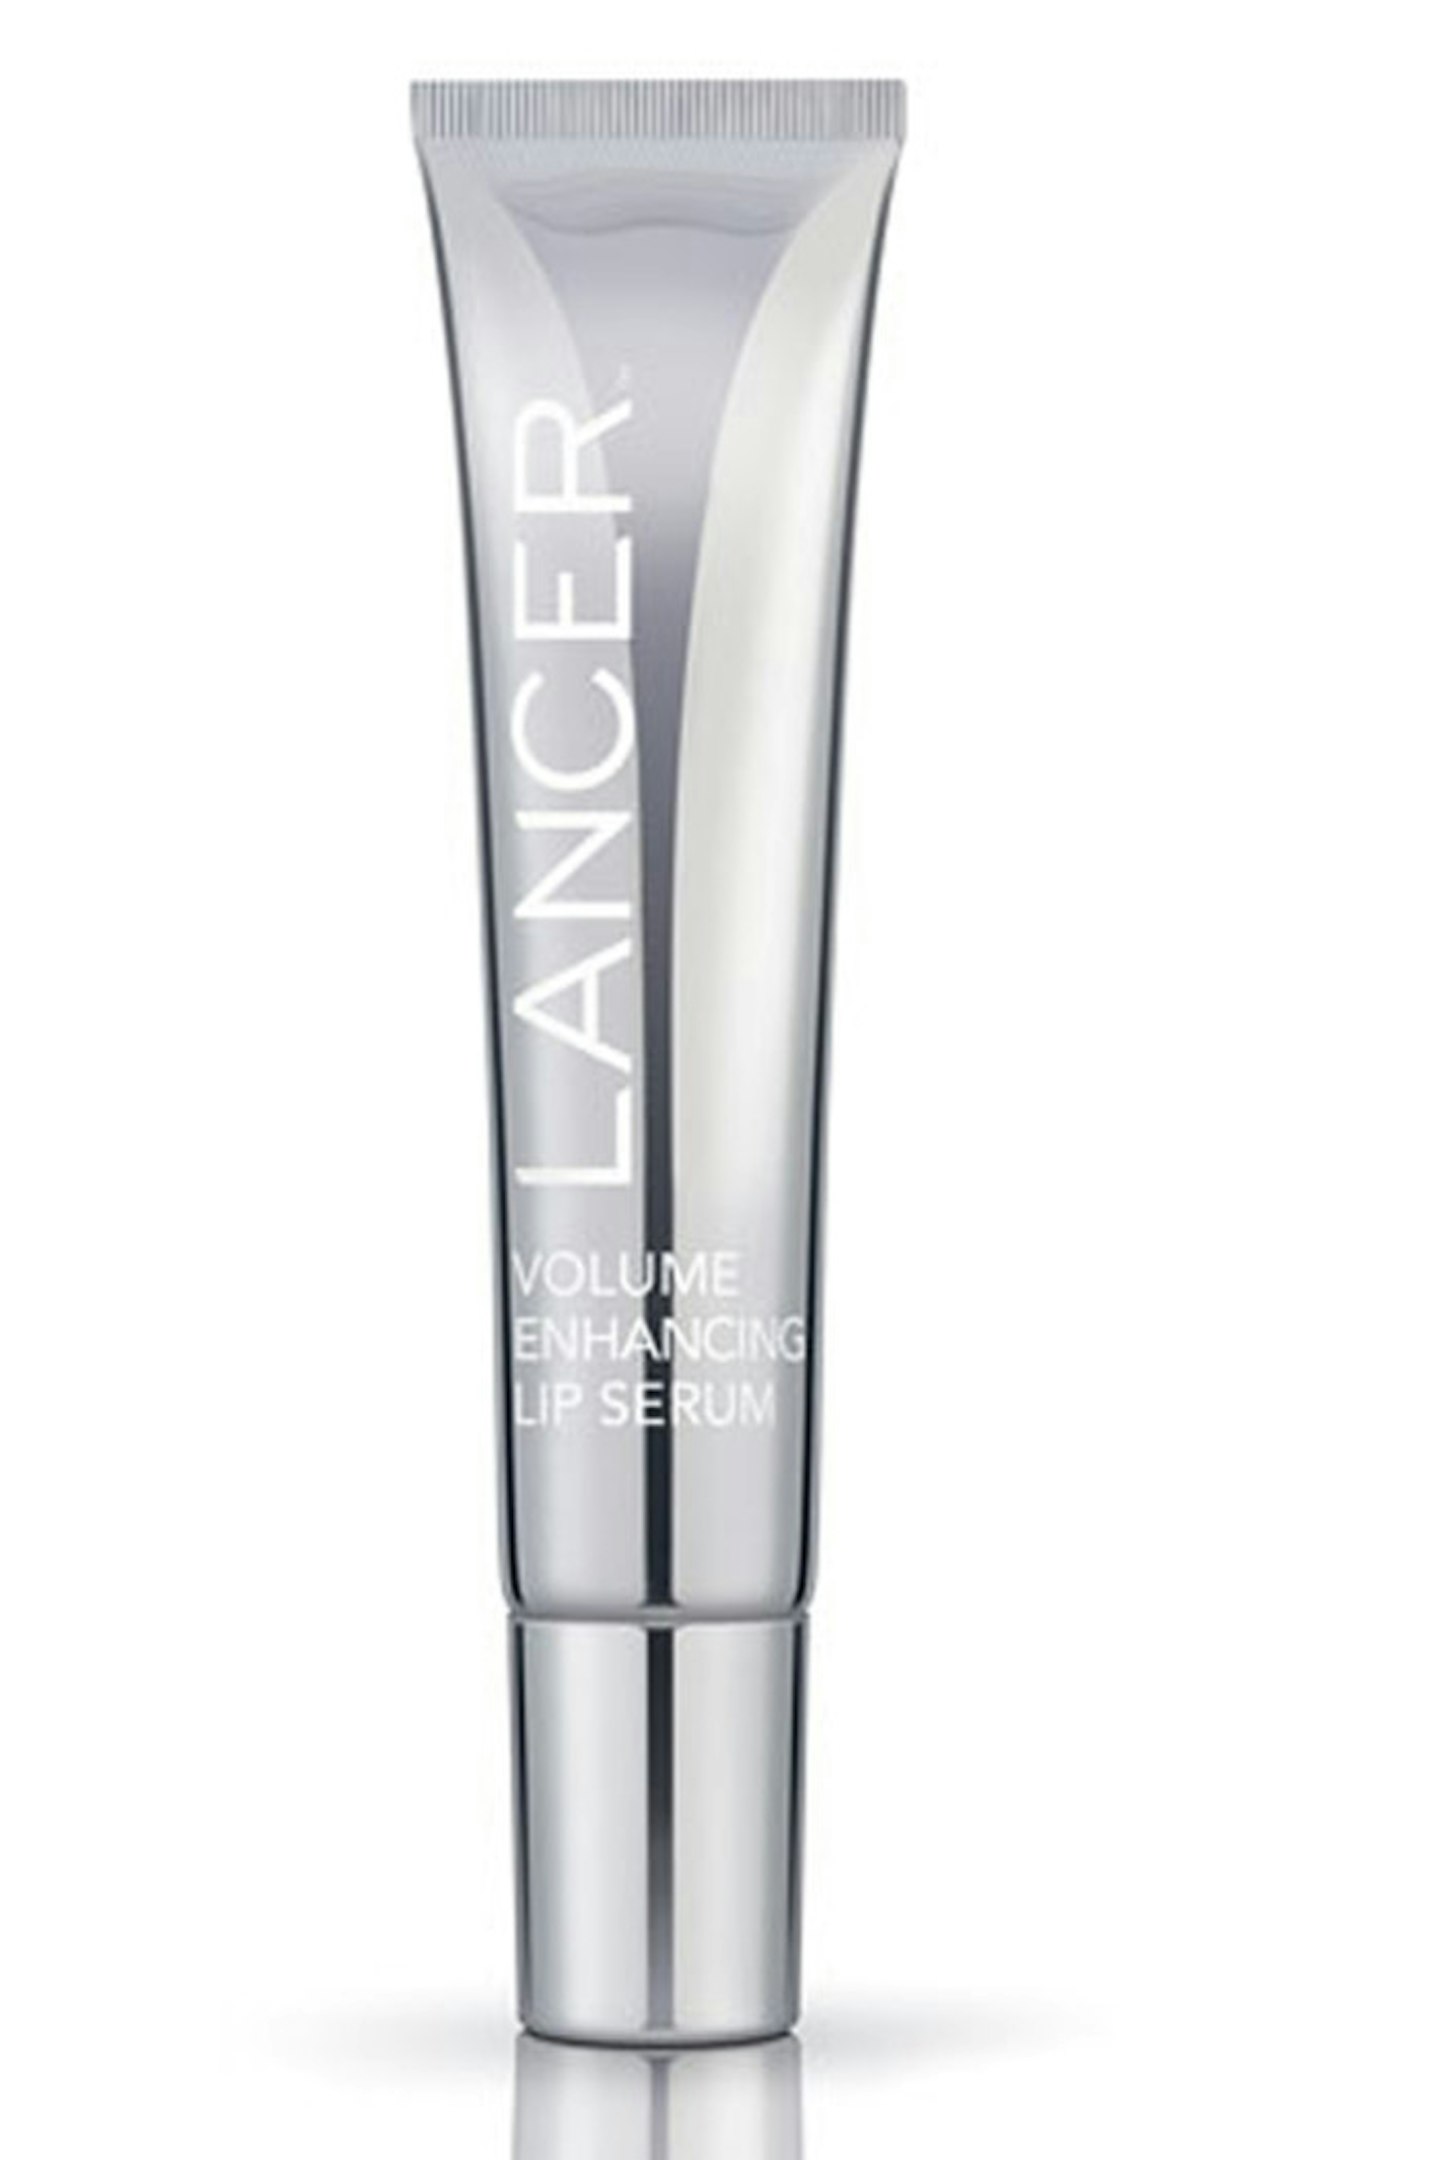 Lancer Volume Enhancing Lip Serum, £32